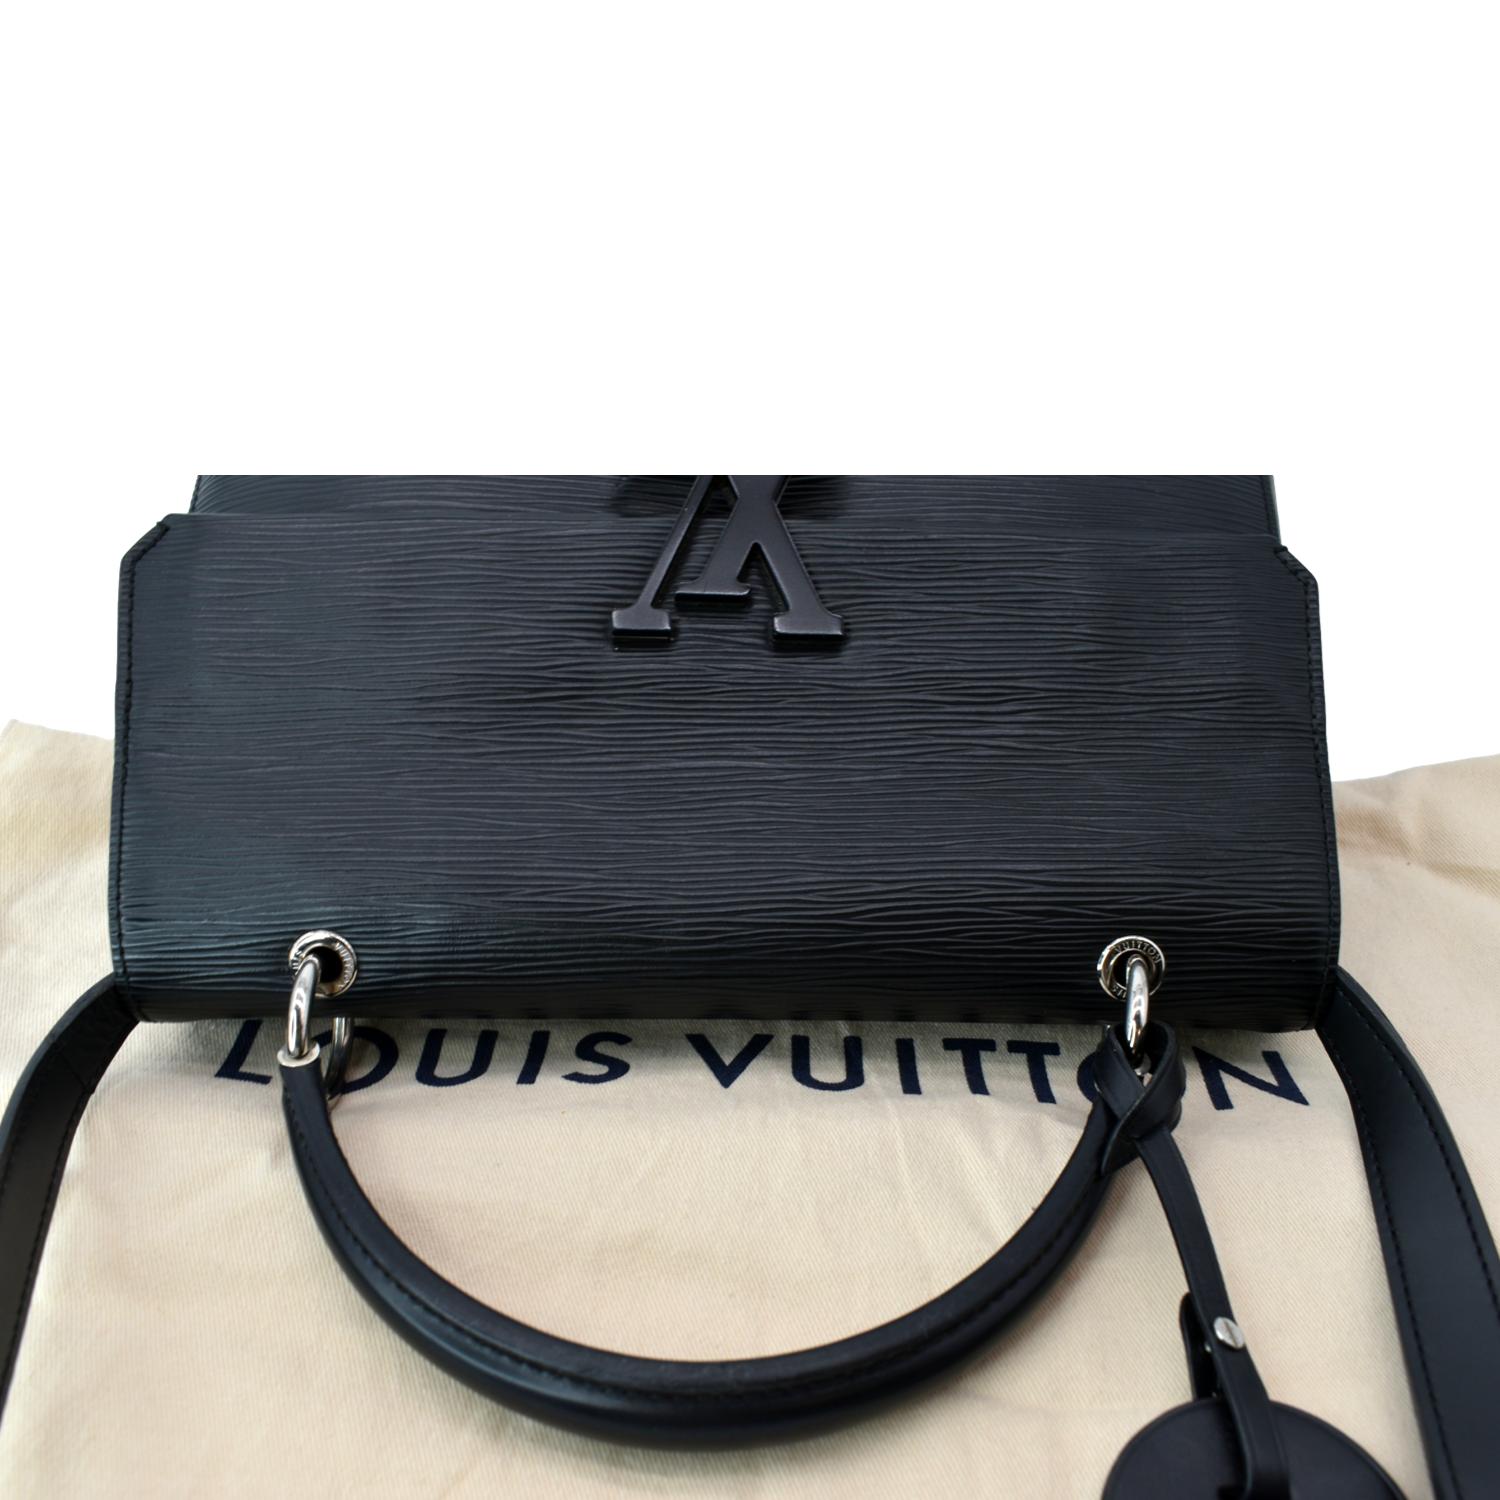 ParisLove72 - PRE ORDER Louis Vuitton GRENELLE MM BAG